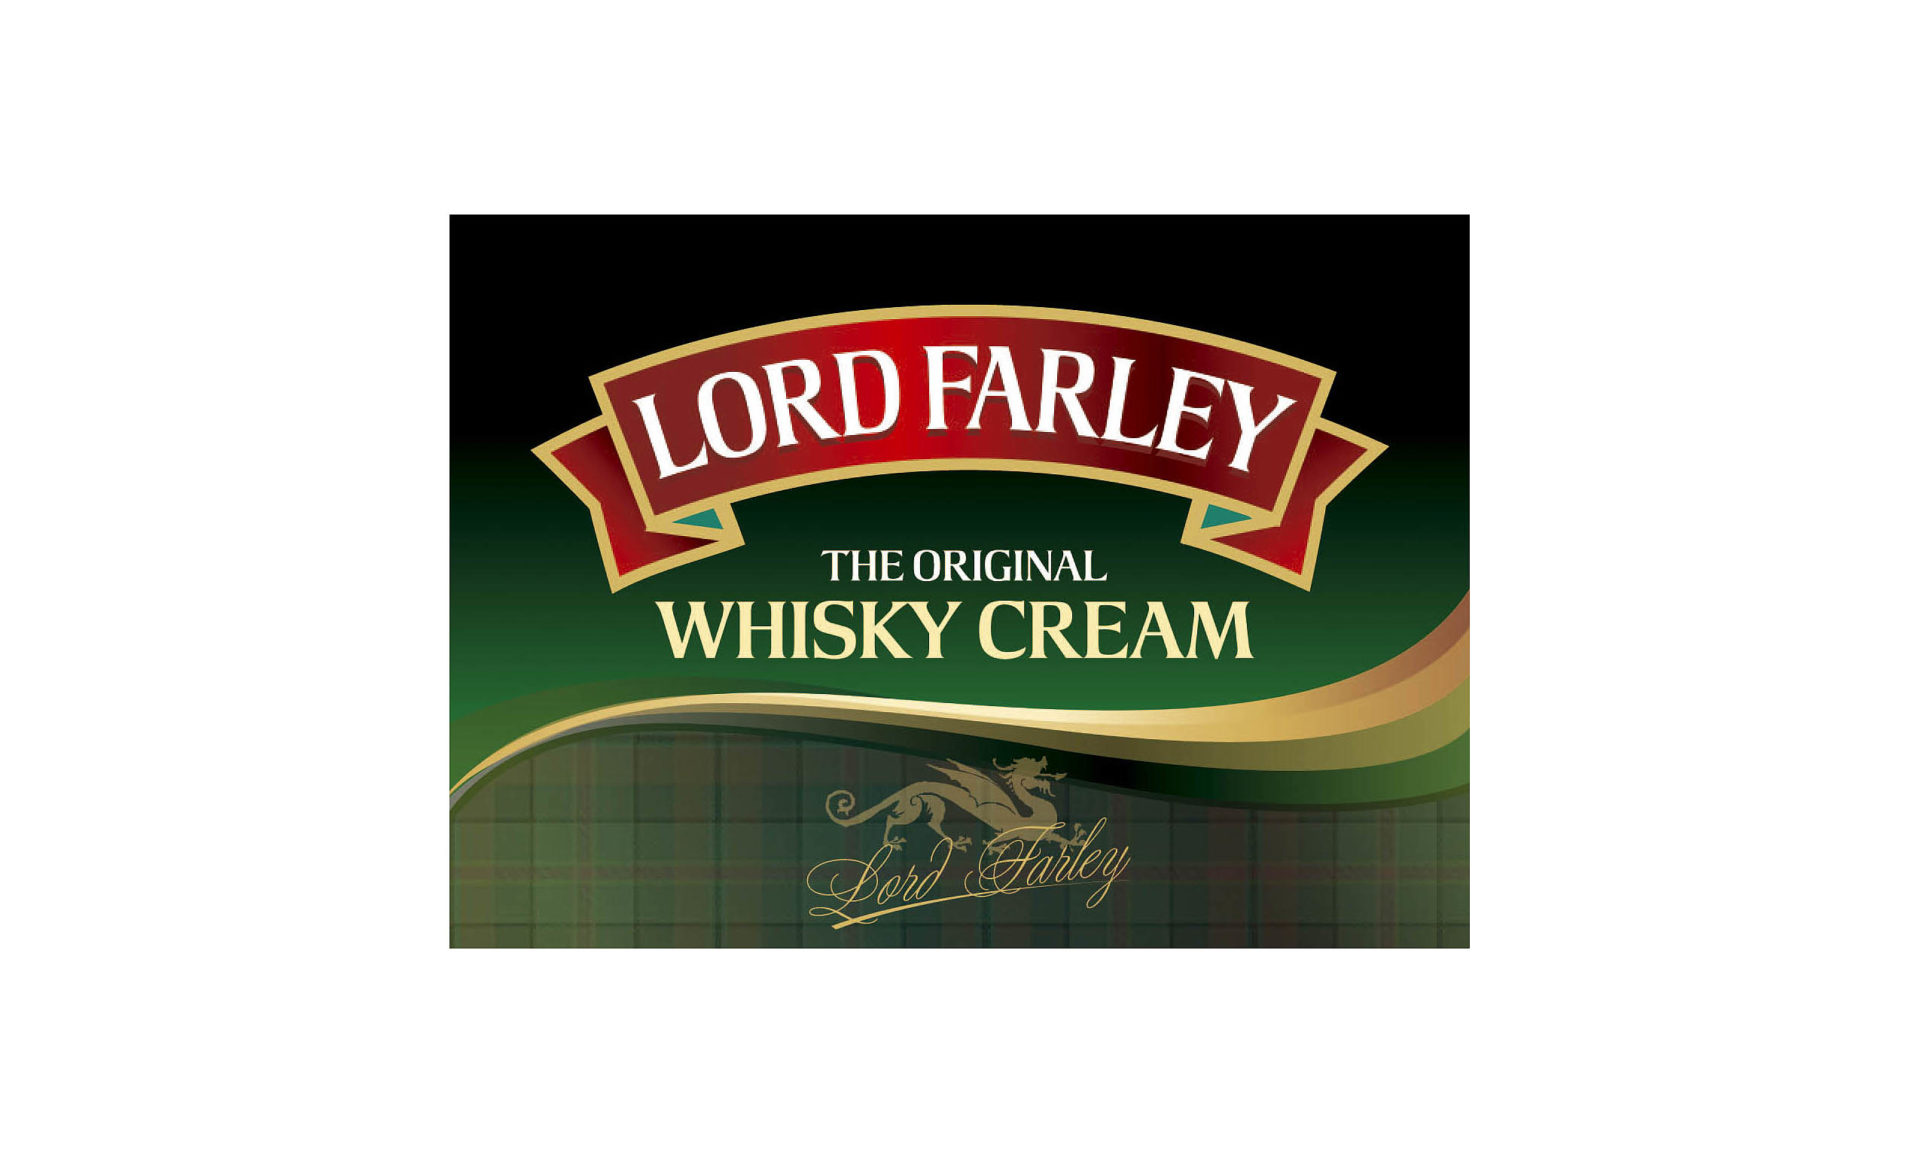 Progettazione etichetta Lord Farley the orinal whisky cream Studiovagnetti Perugia